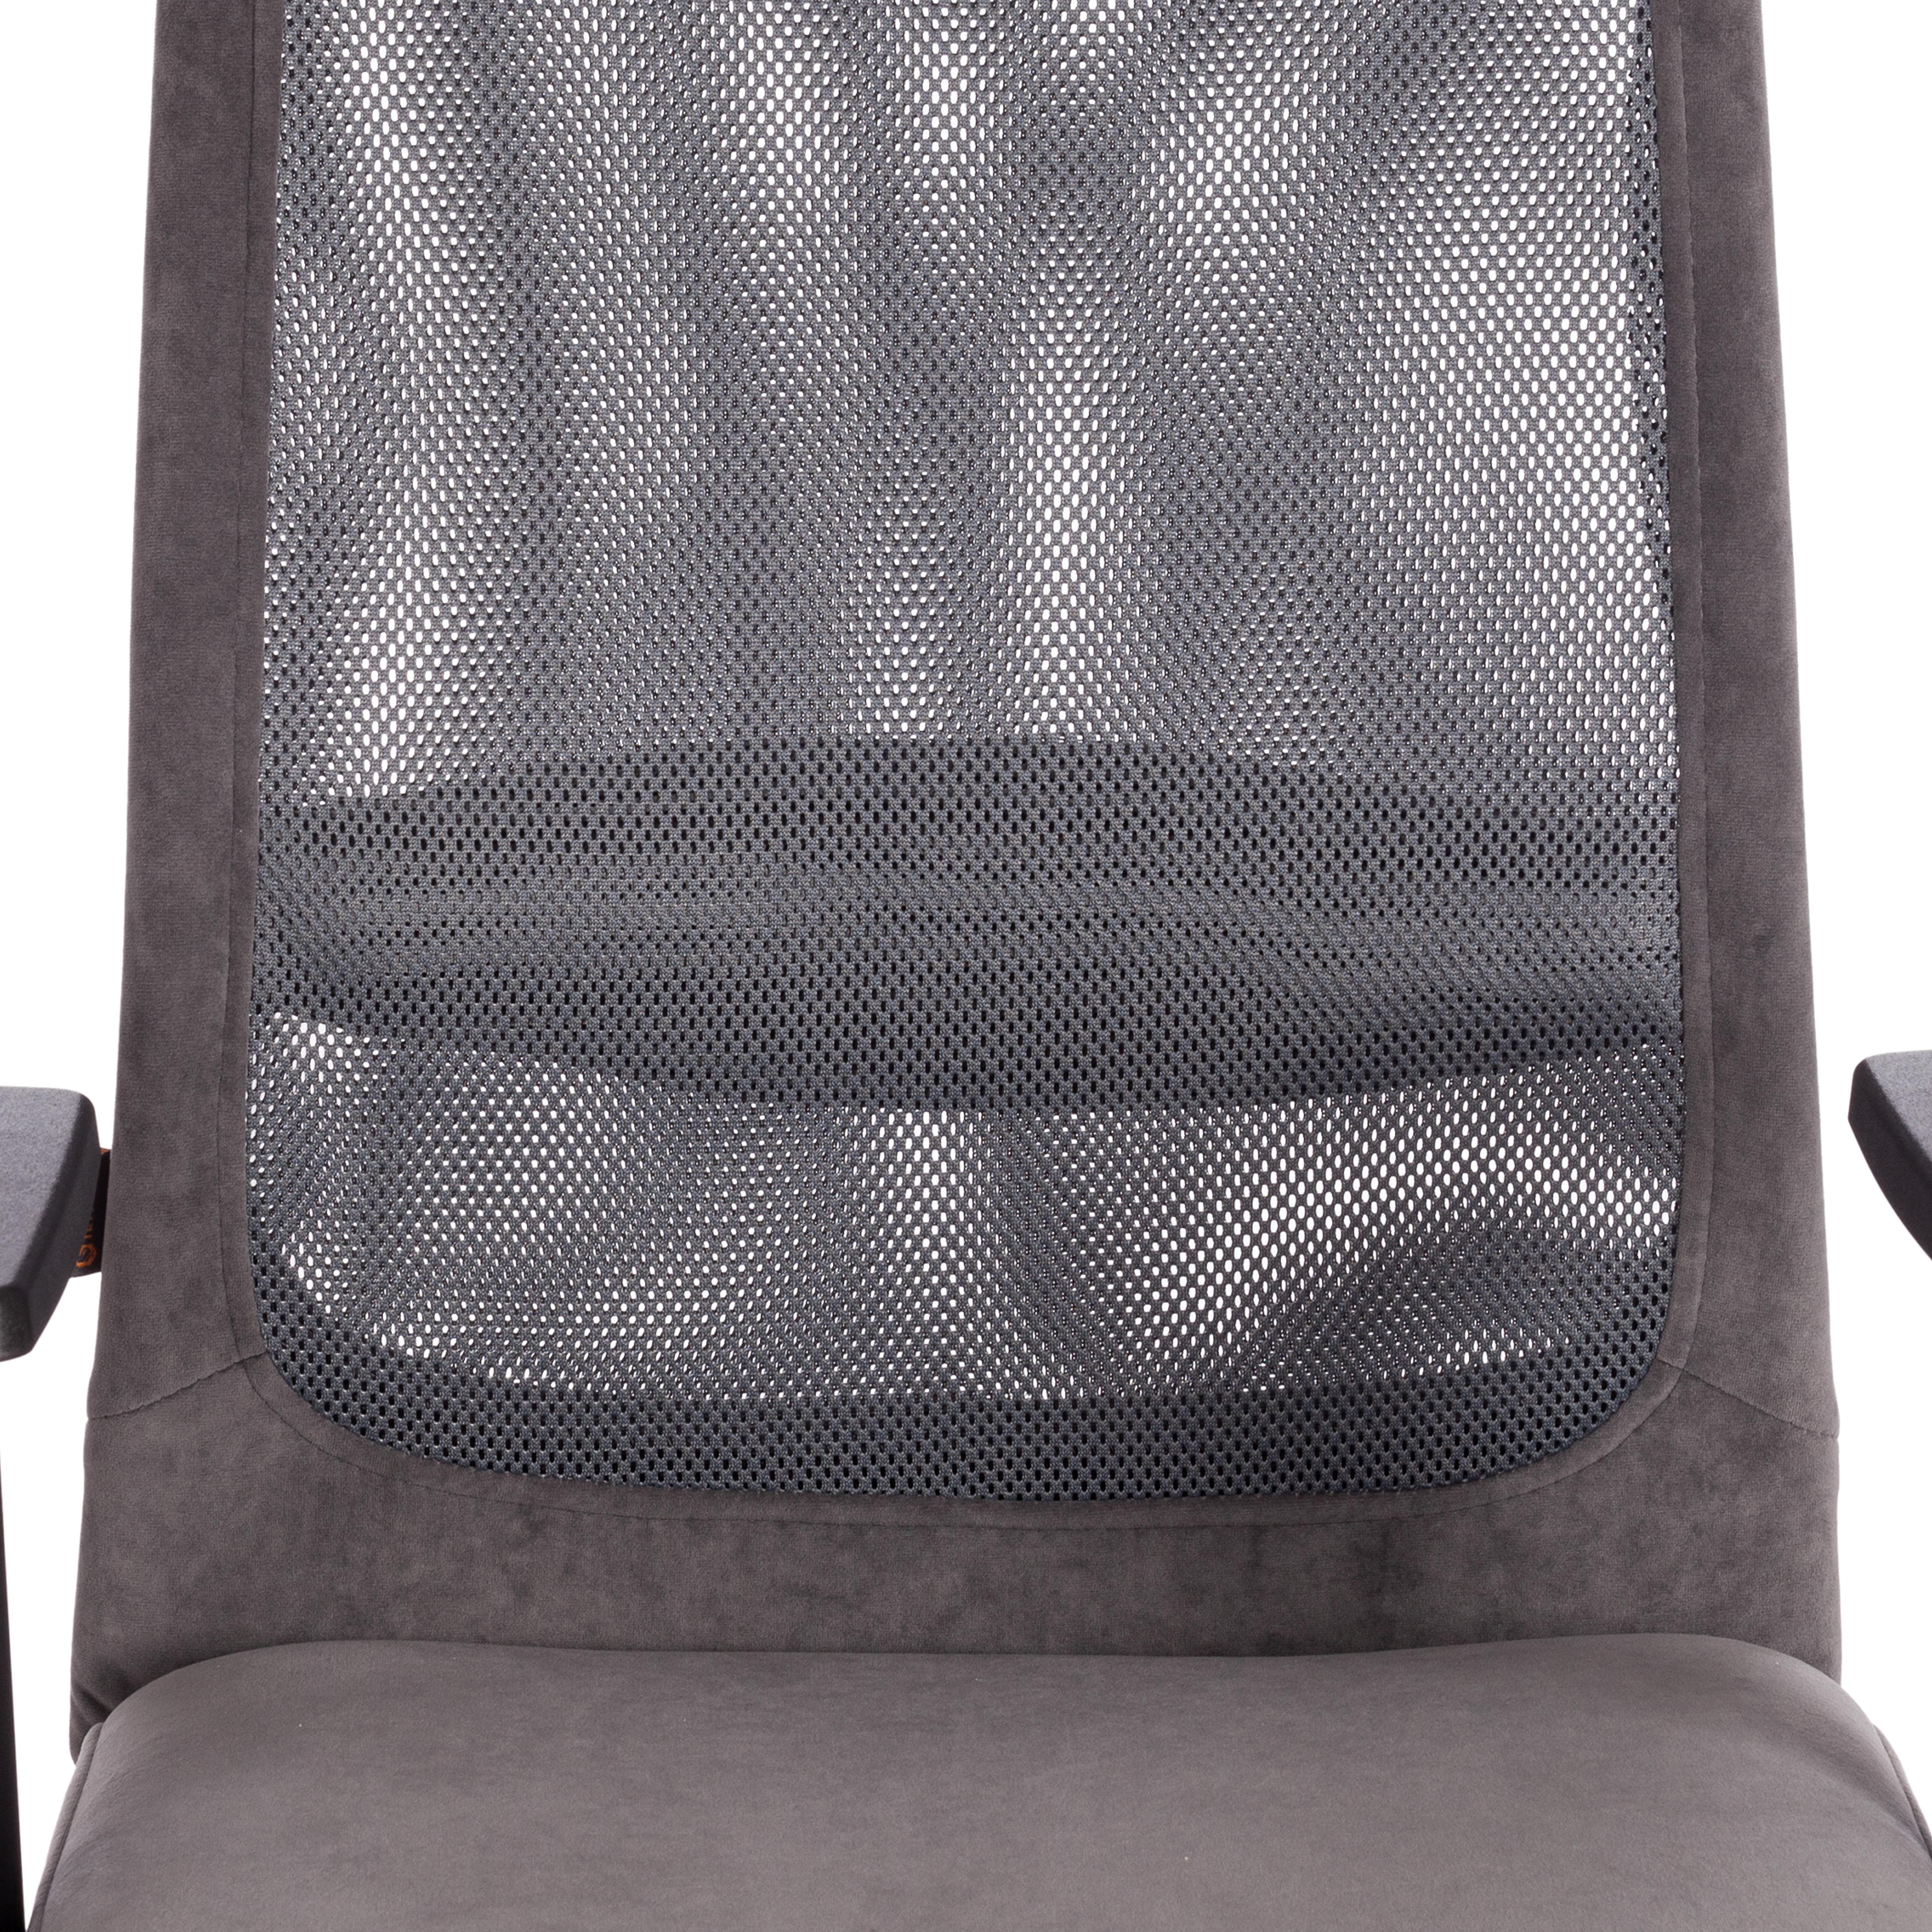 Кресло PROFIT PLT флок/ткань, серый, 29/TW-12